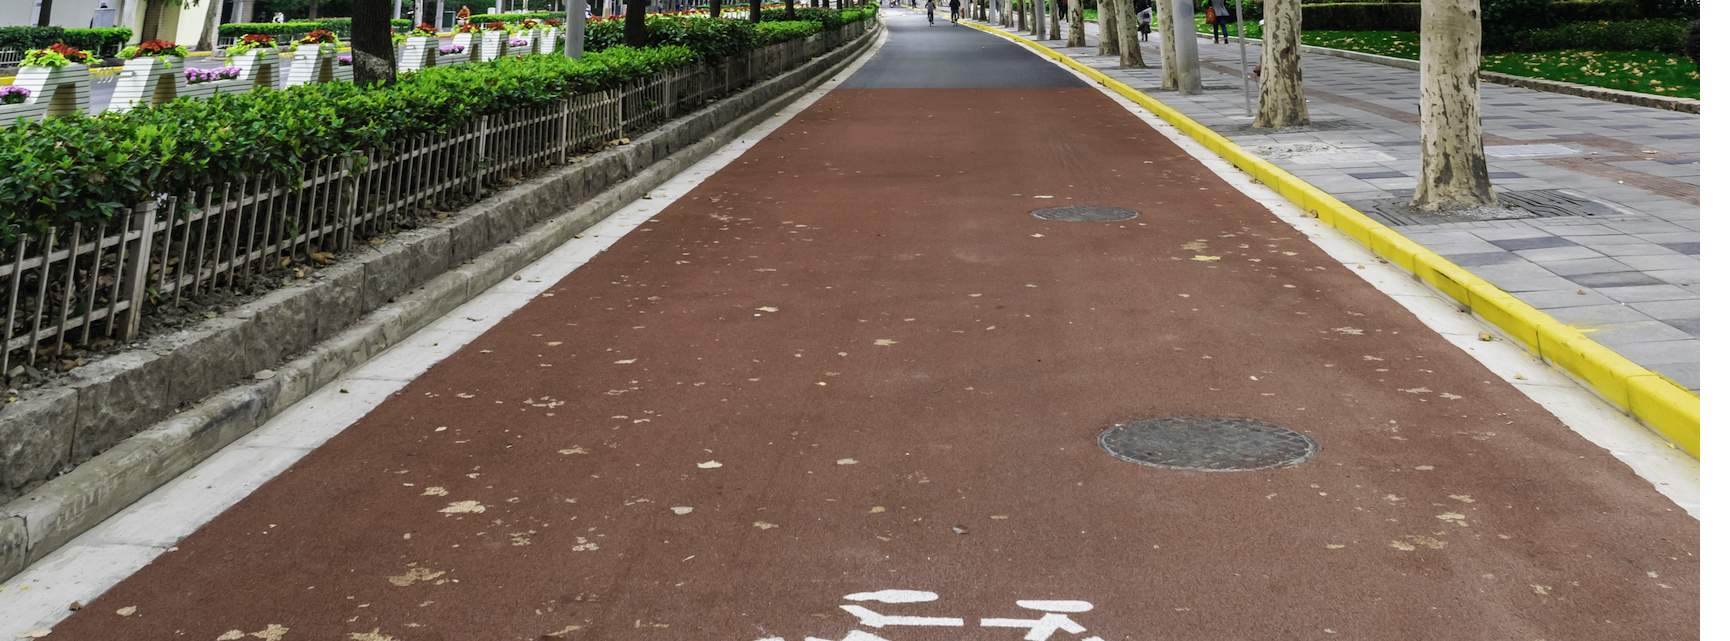 Cycle lane in Shanghai